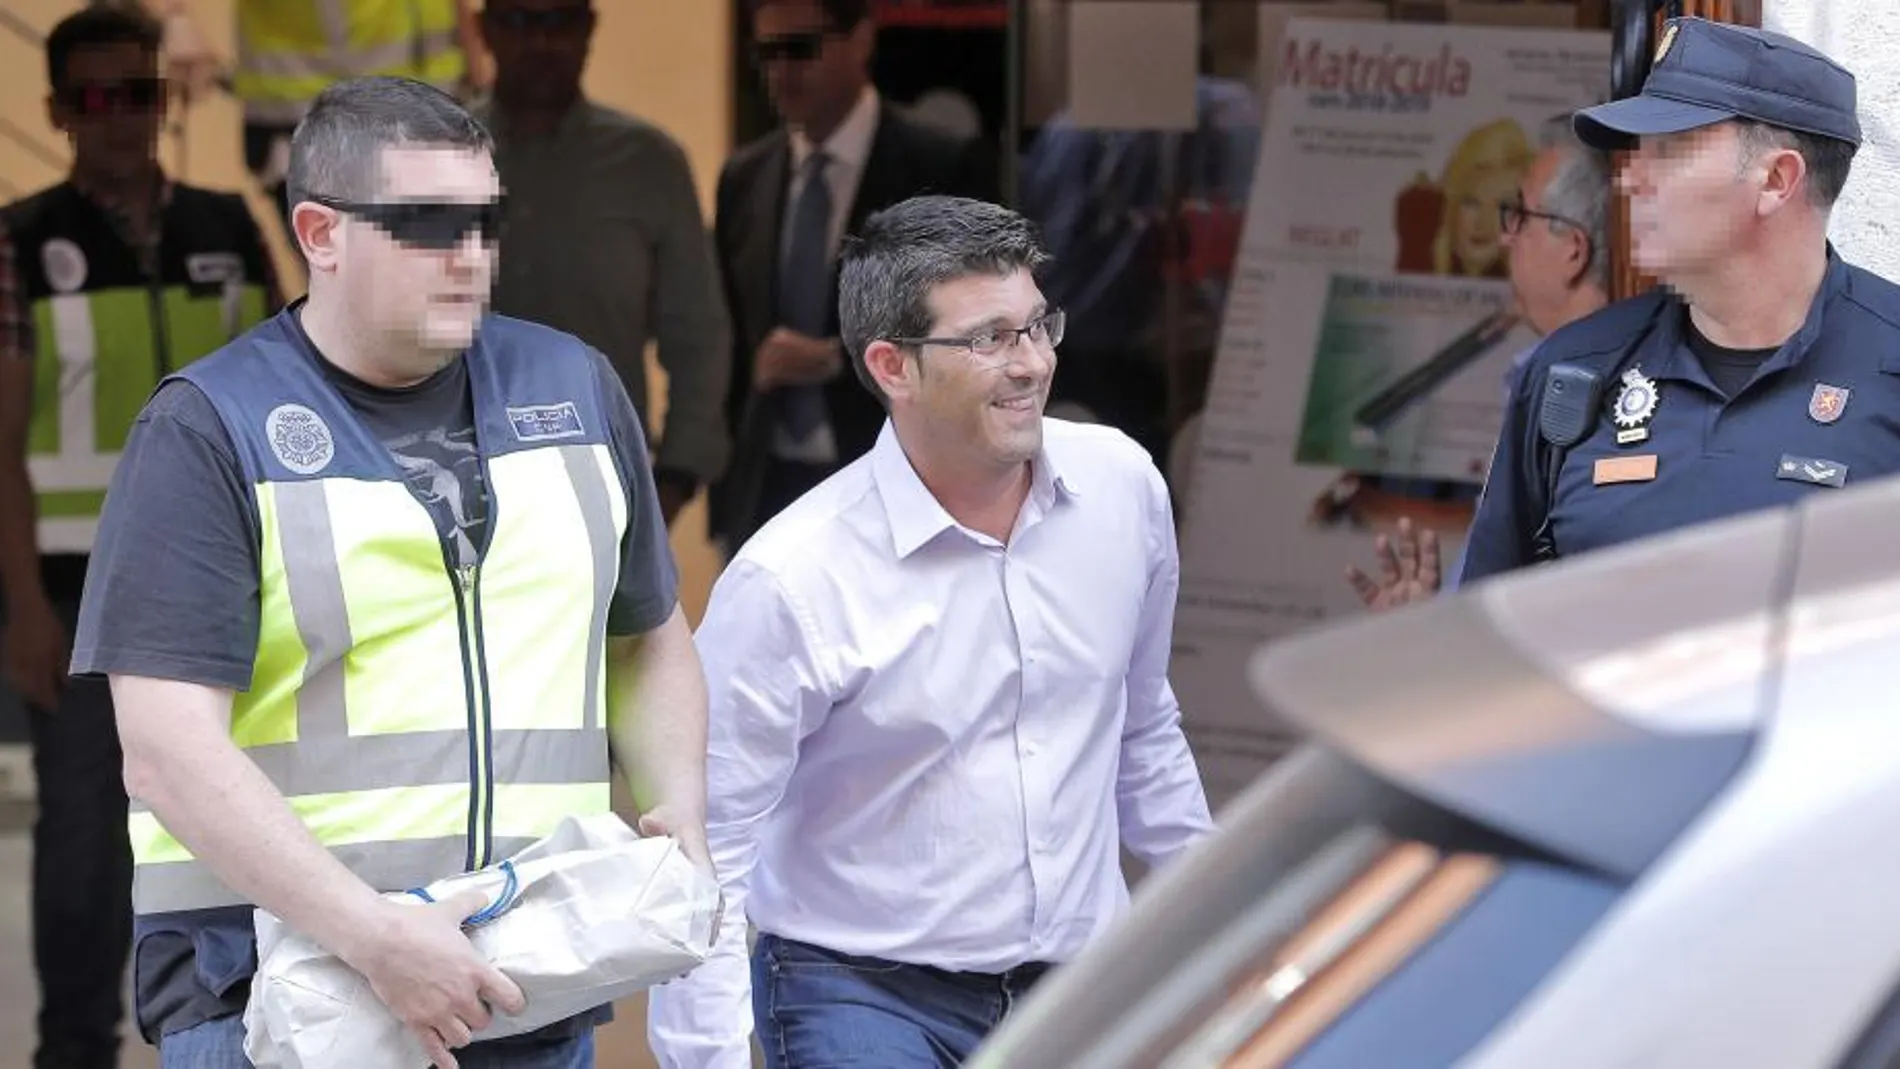 El ex presidente de la Diputación de Valencia, Jorge Rodríguez, salió detenido de la Diputación de Valencia